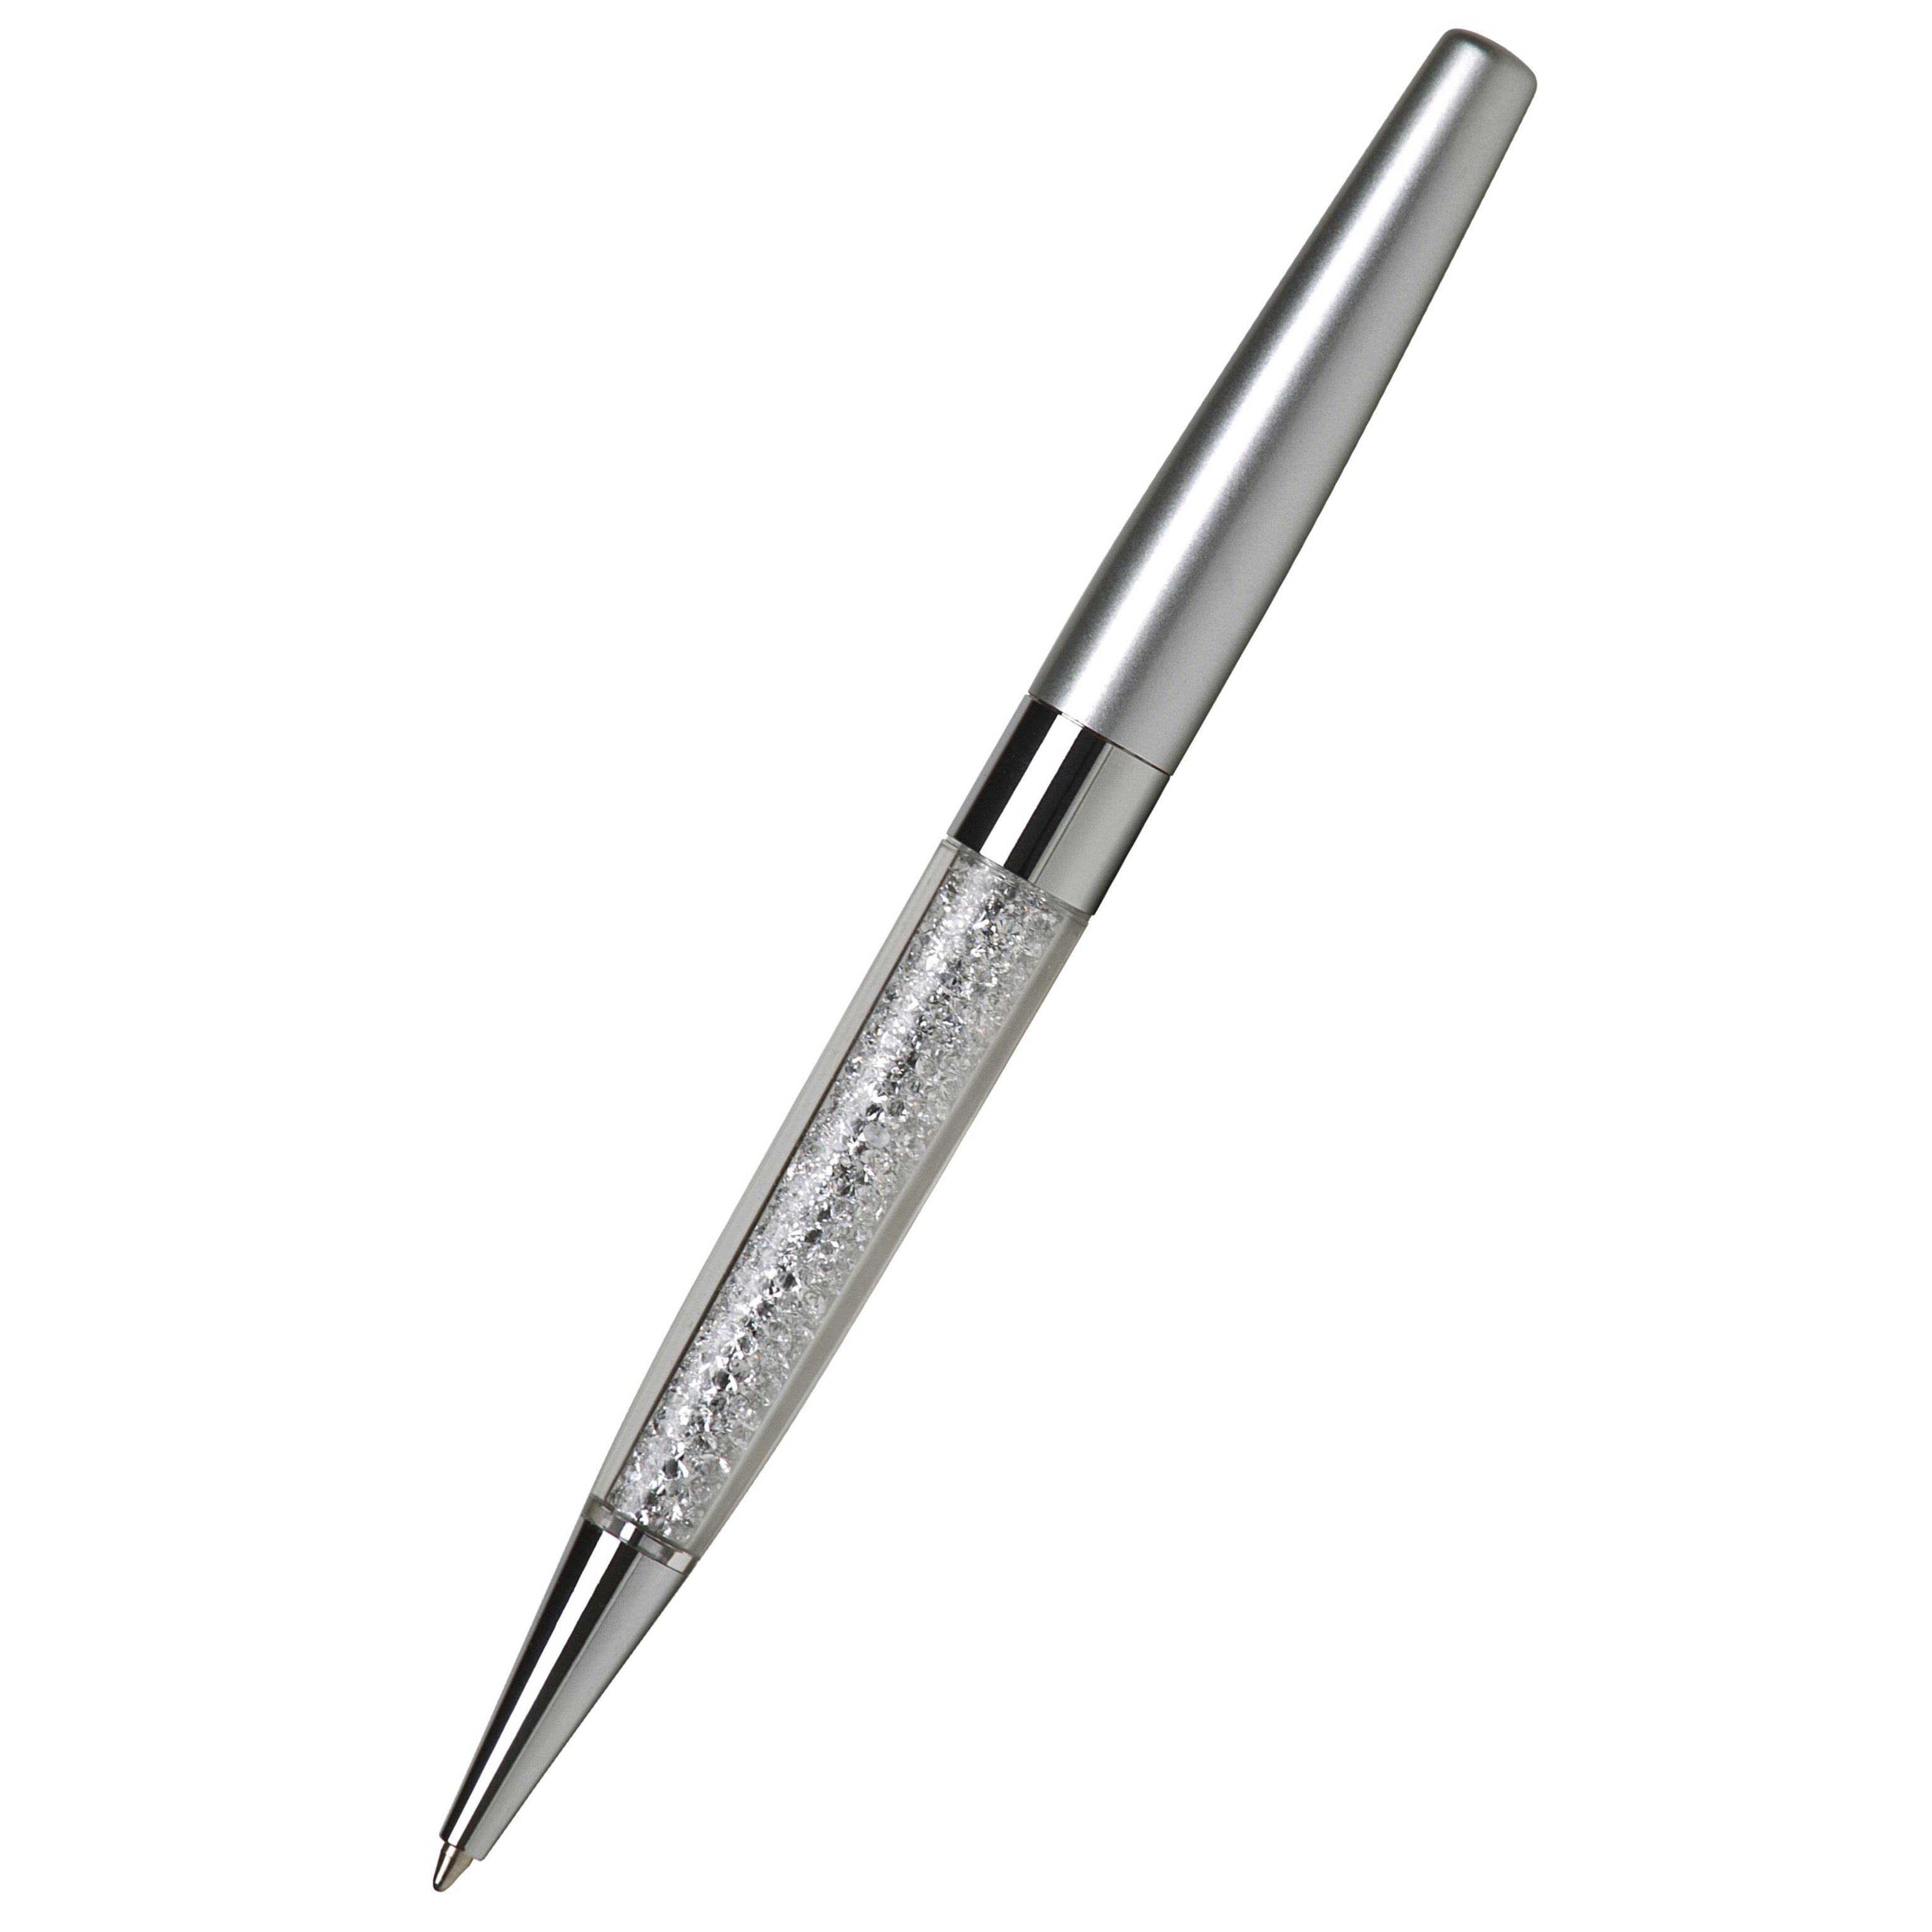 Kuličkové pero Art Cystella, stříbrná s bílými krystaly Swarovski v dolní části